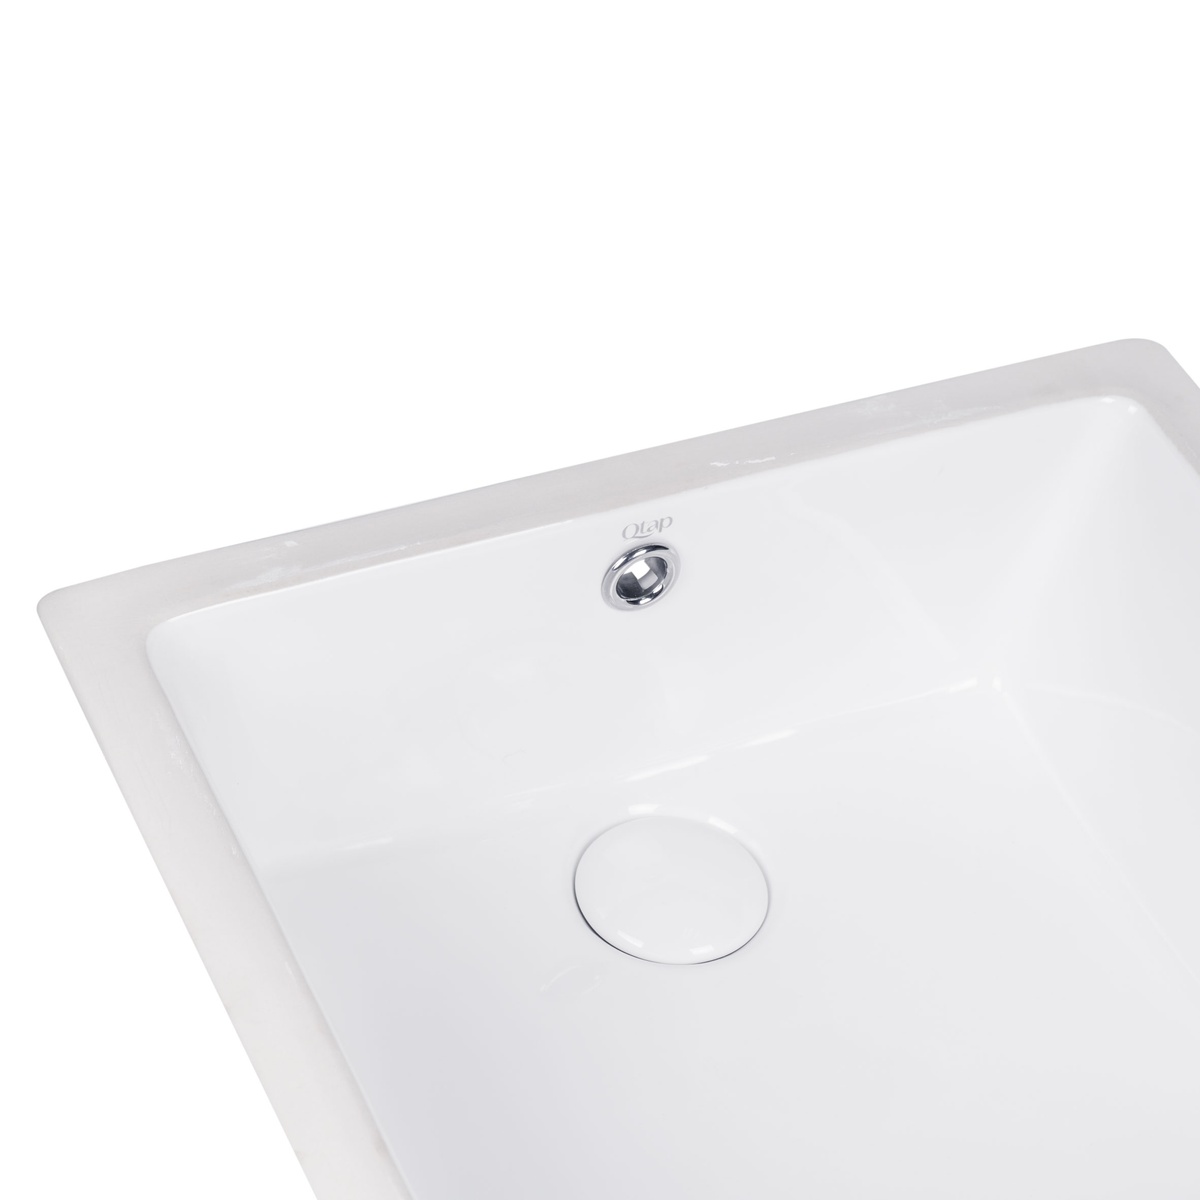 Умывальник врезной для ванной под столешницу 440мм x 445мм Q-TAP Stork белый квадратная QT15116086W